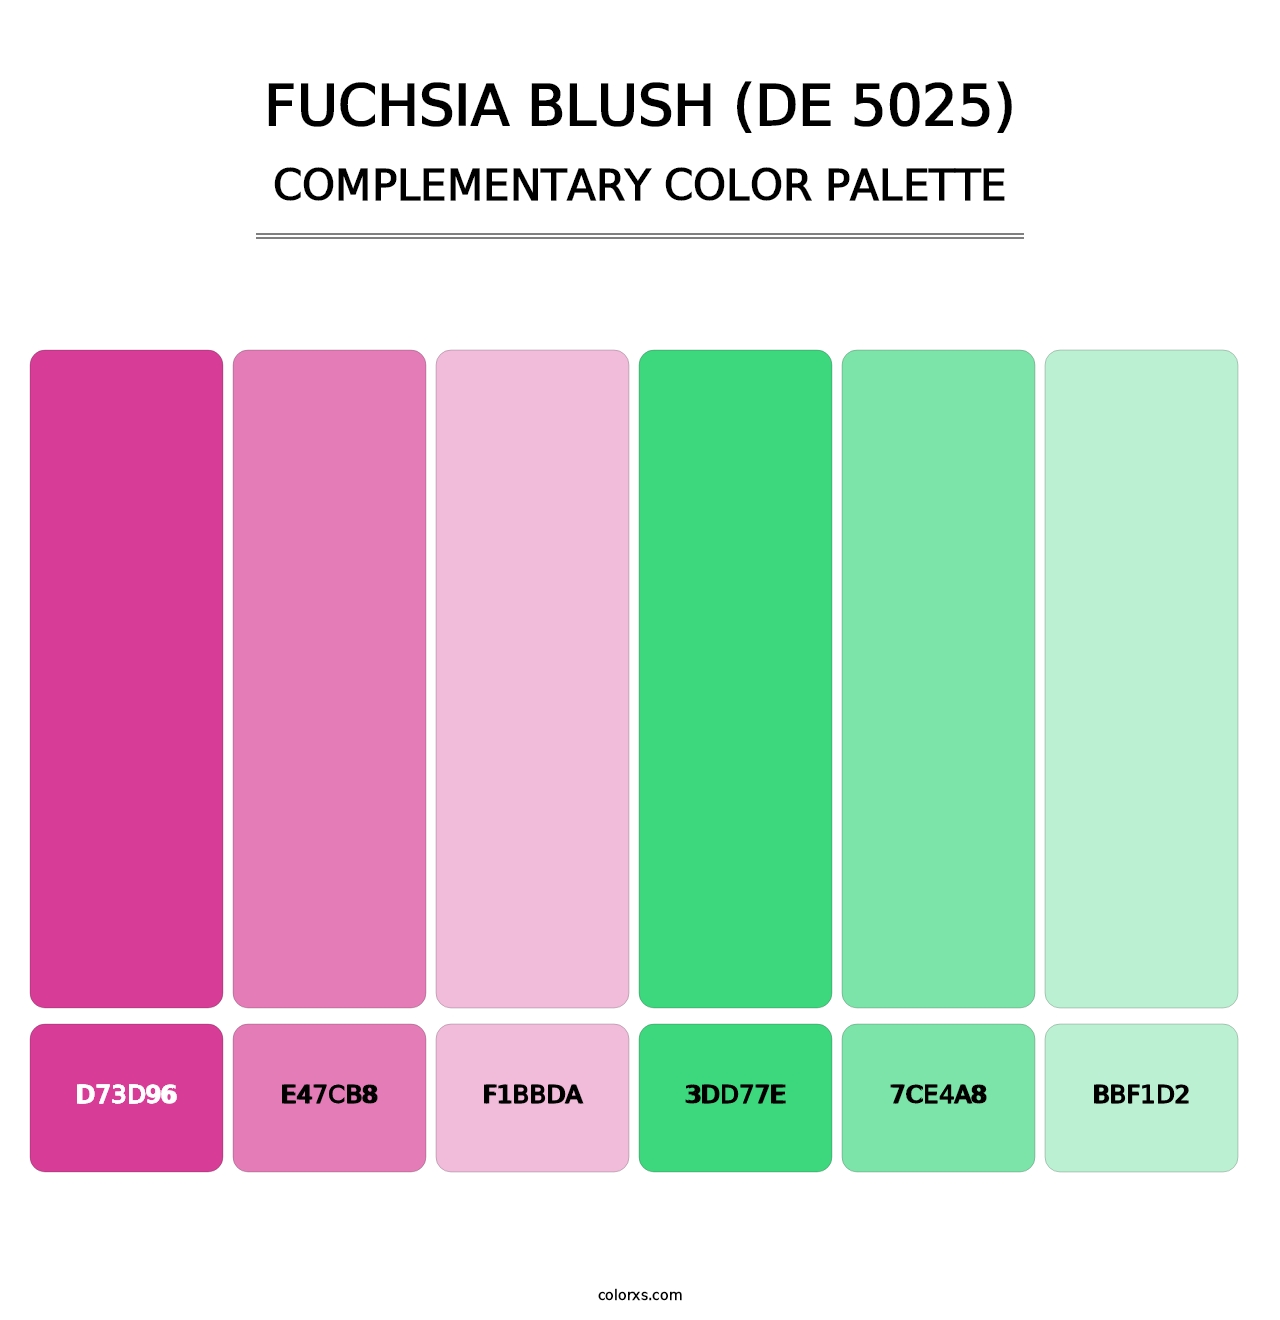 Fuchsia Blush (DE 5025) - Complementary Color Palette